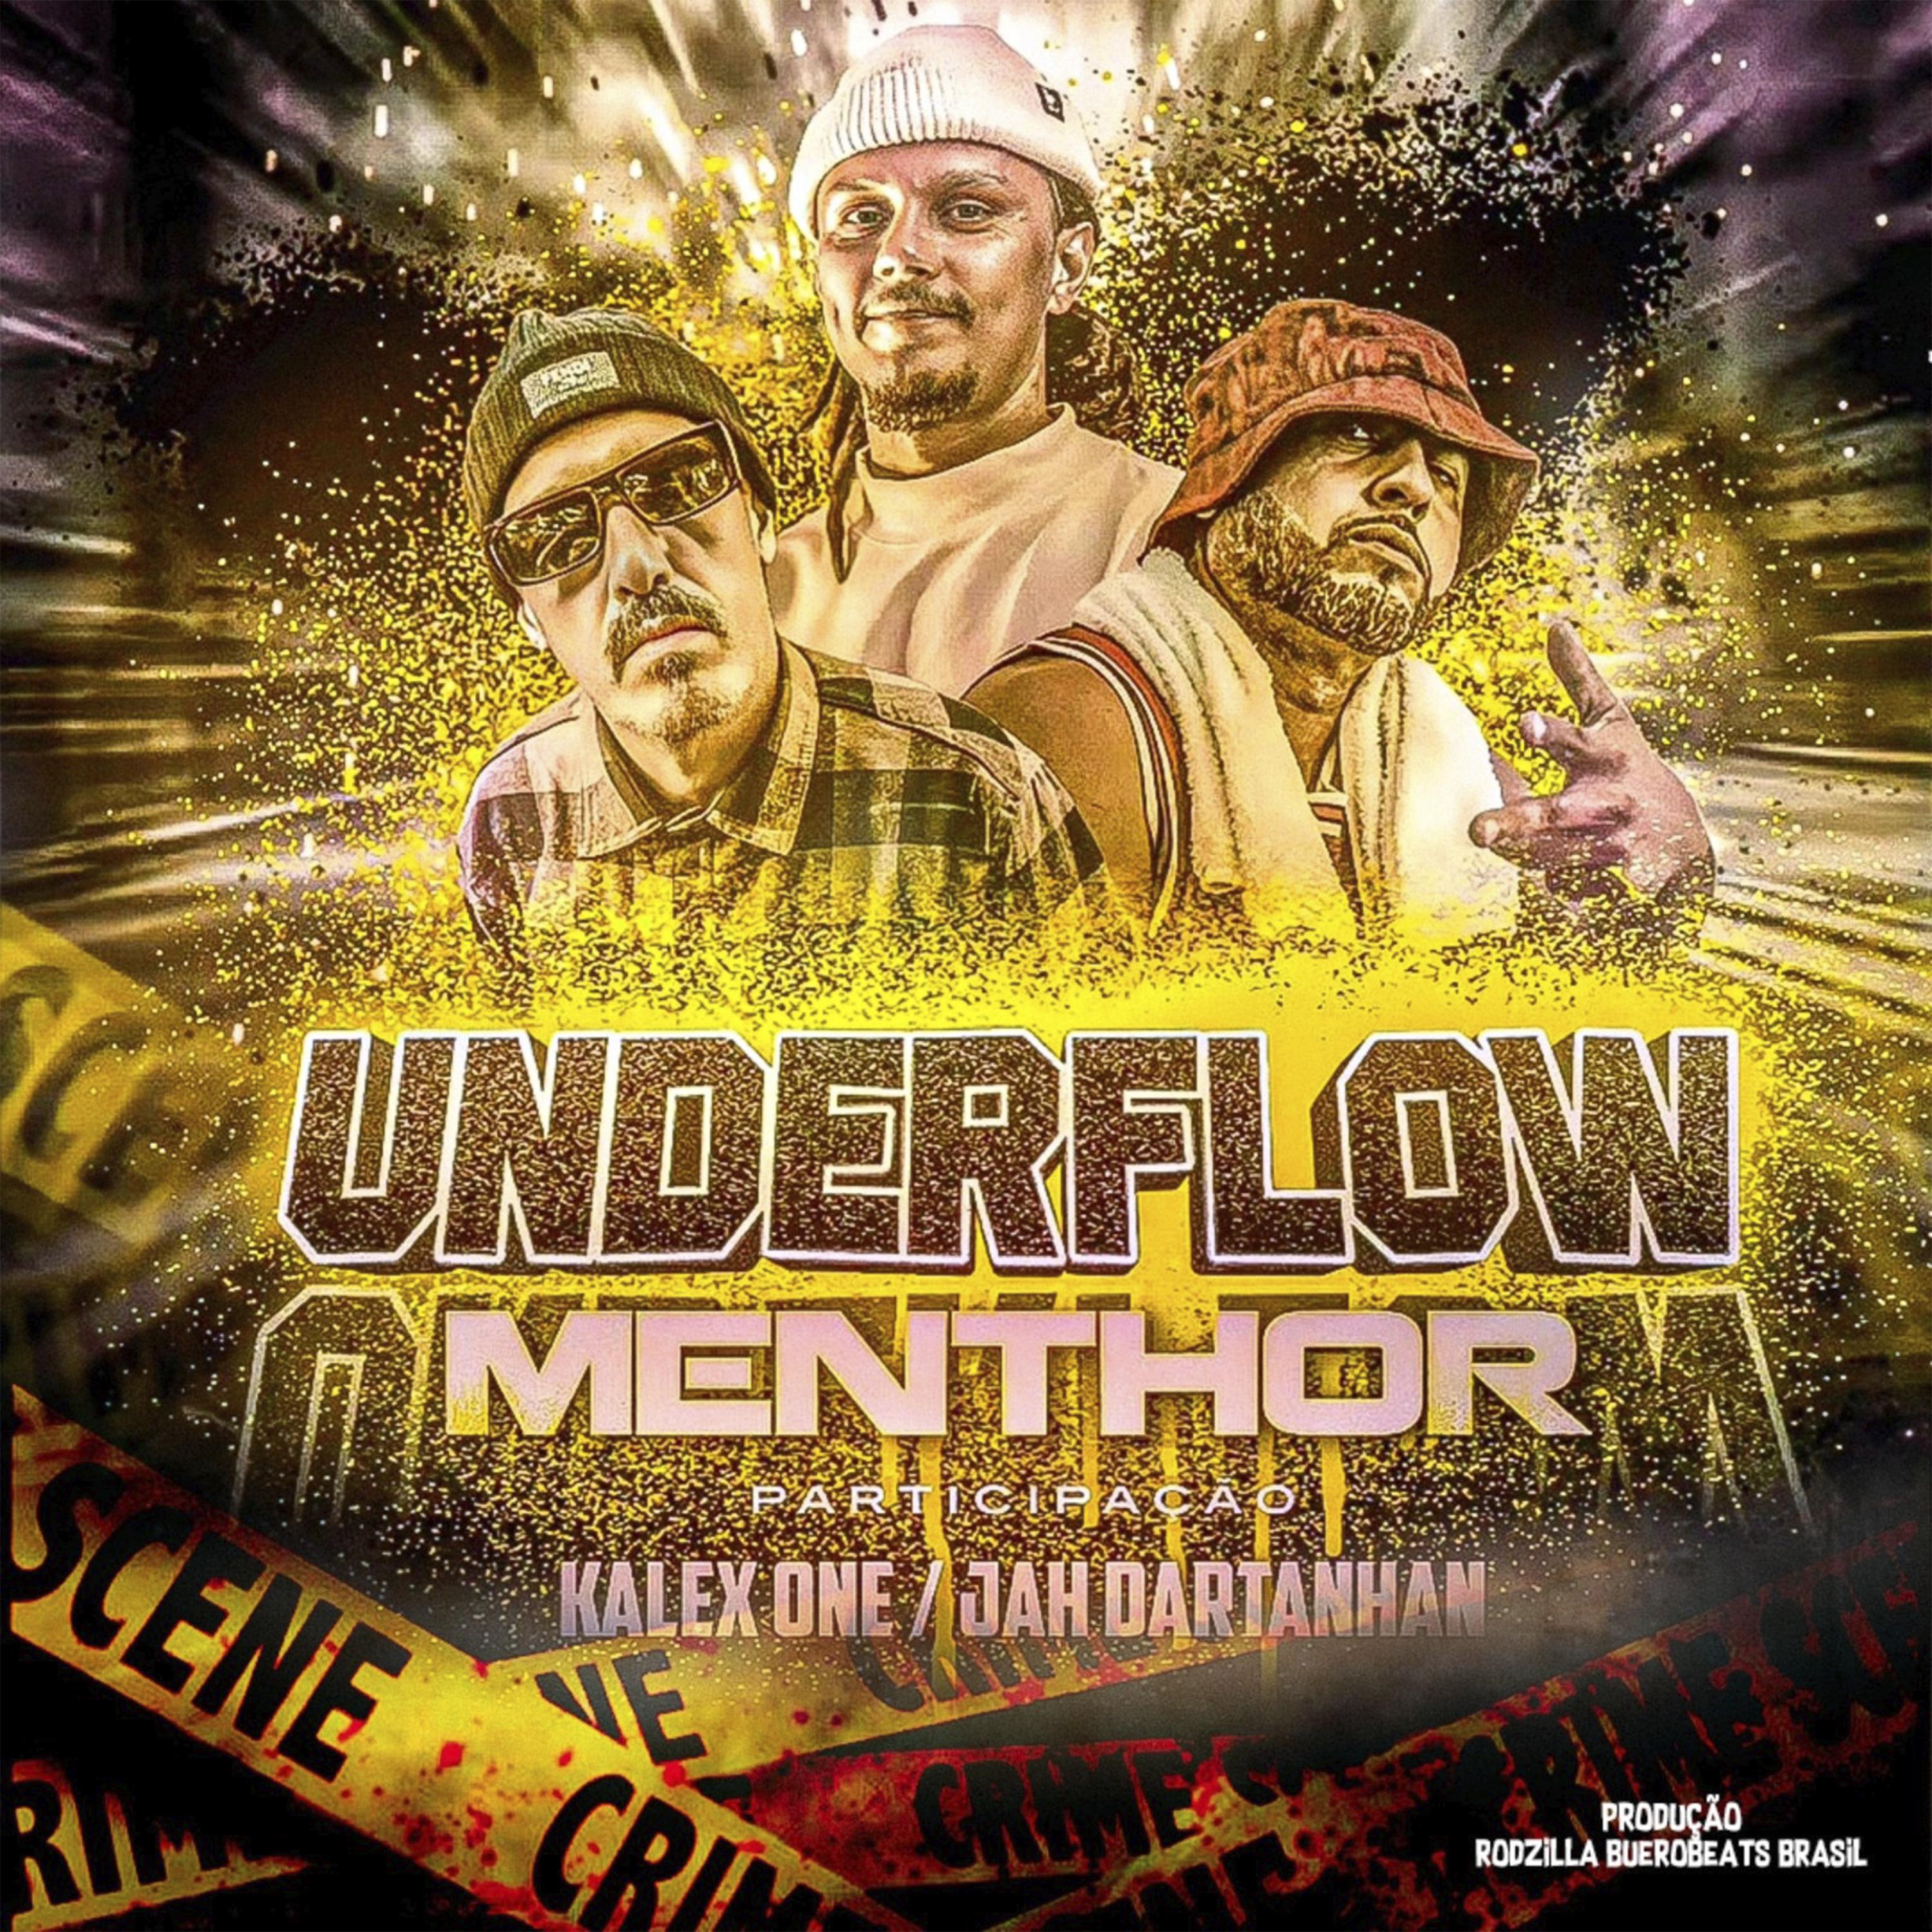 Постер альбома Underflow